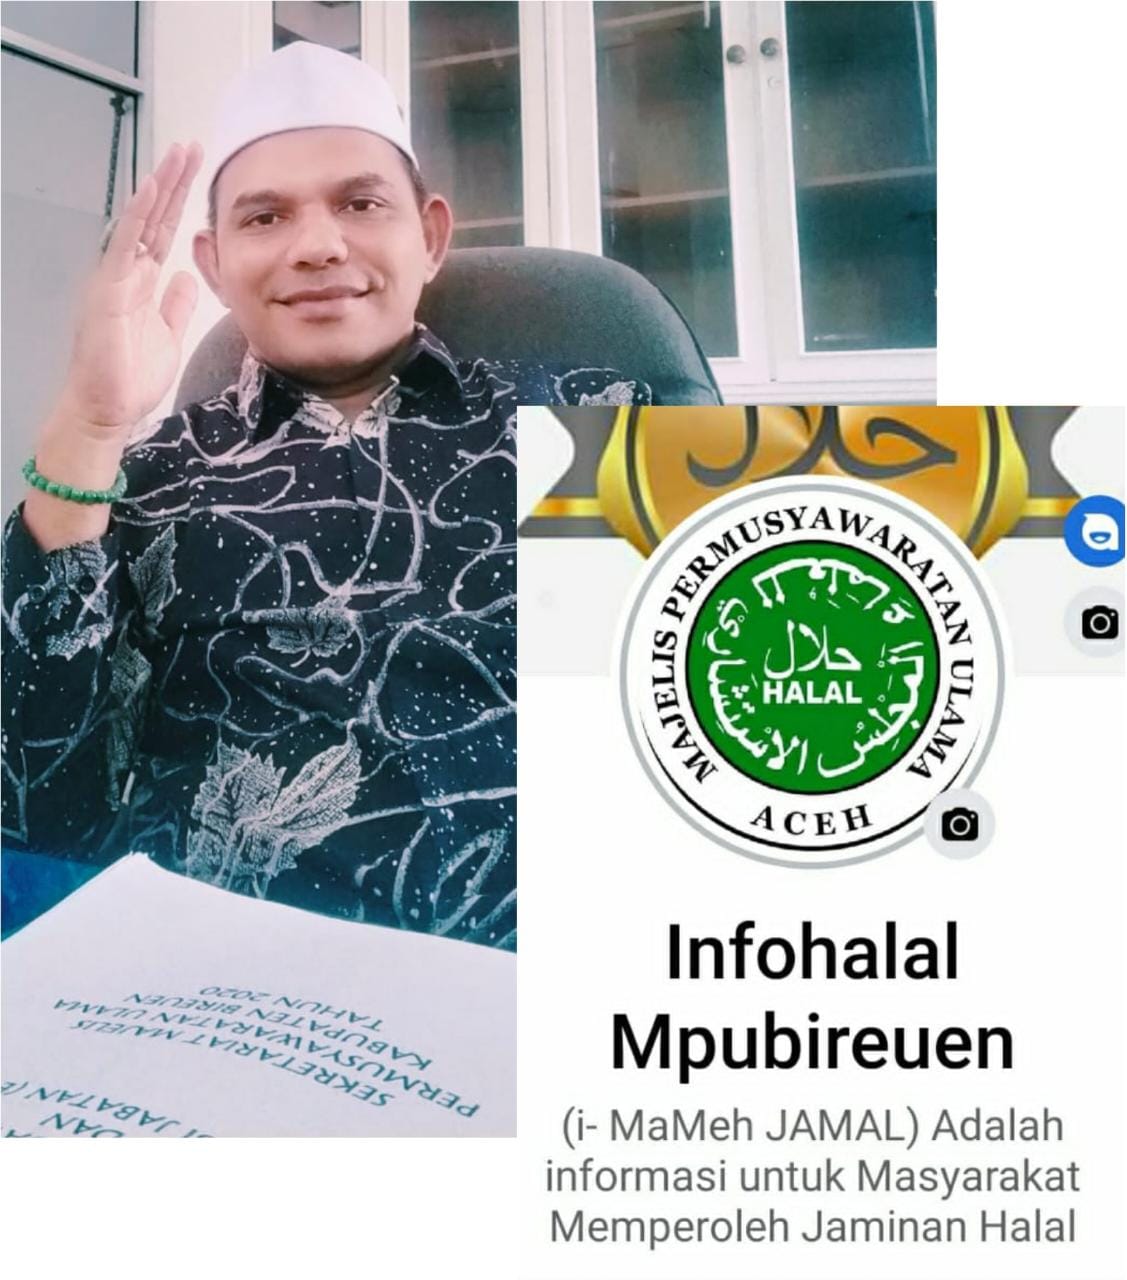 i-MaMeh Jamal, Media Sosial MPU Bireuen untuk Memperoleh Informasi Jaminan Halal